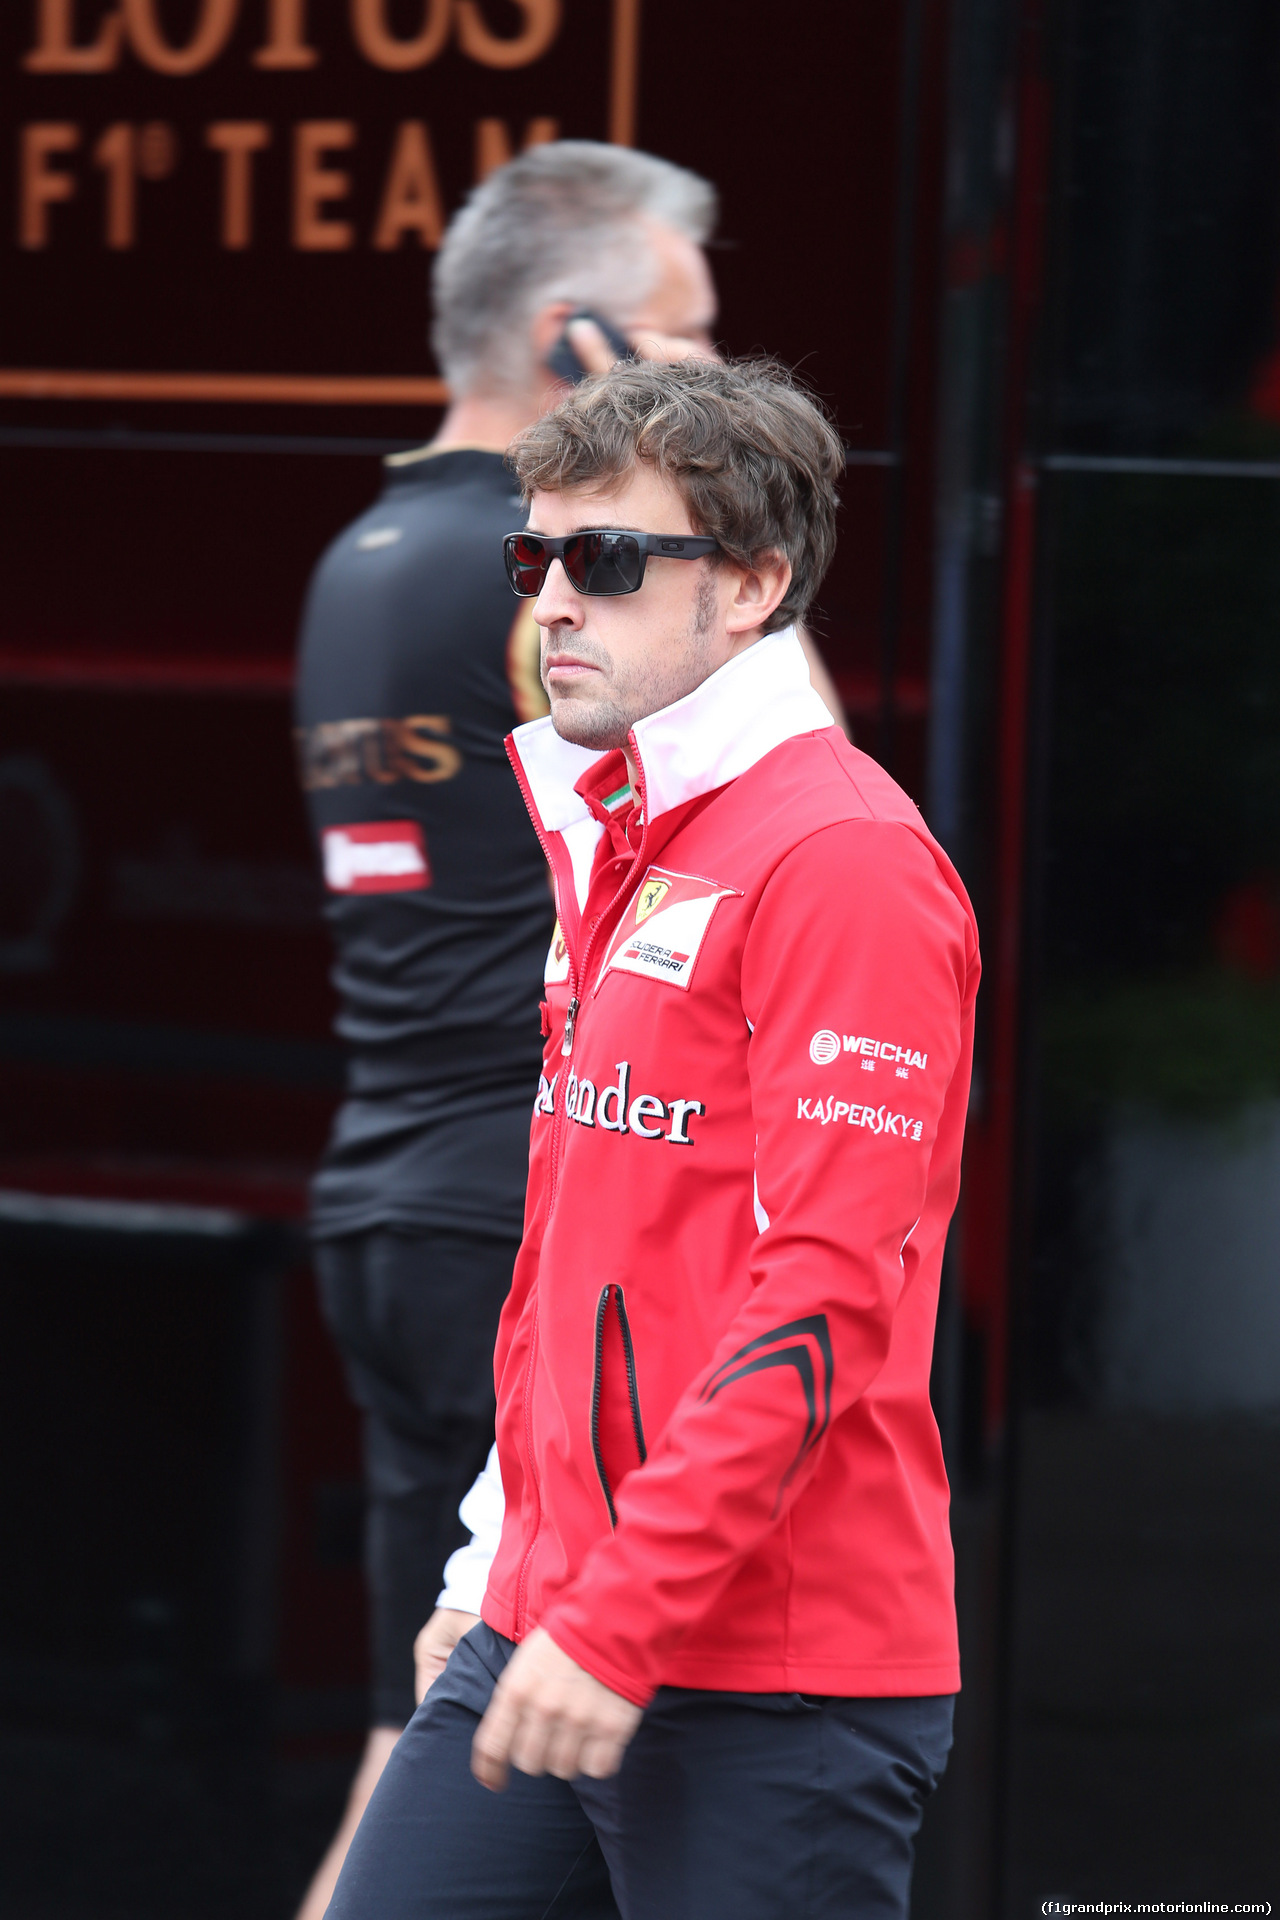 GP GERMANIA, 20.07.2014- Fernando Alonso (ESP) Ferrari F14T